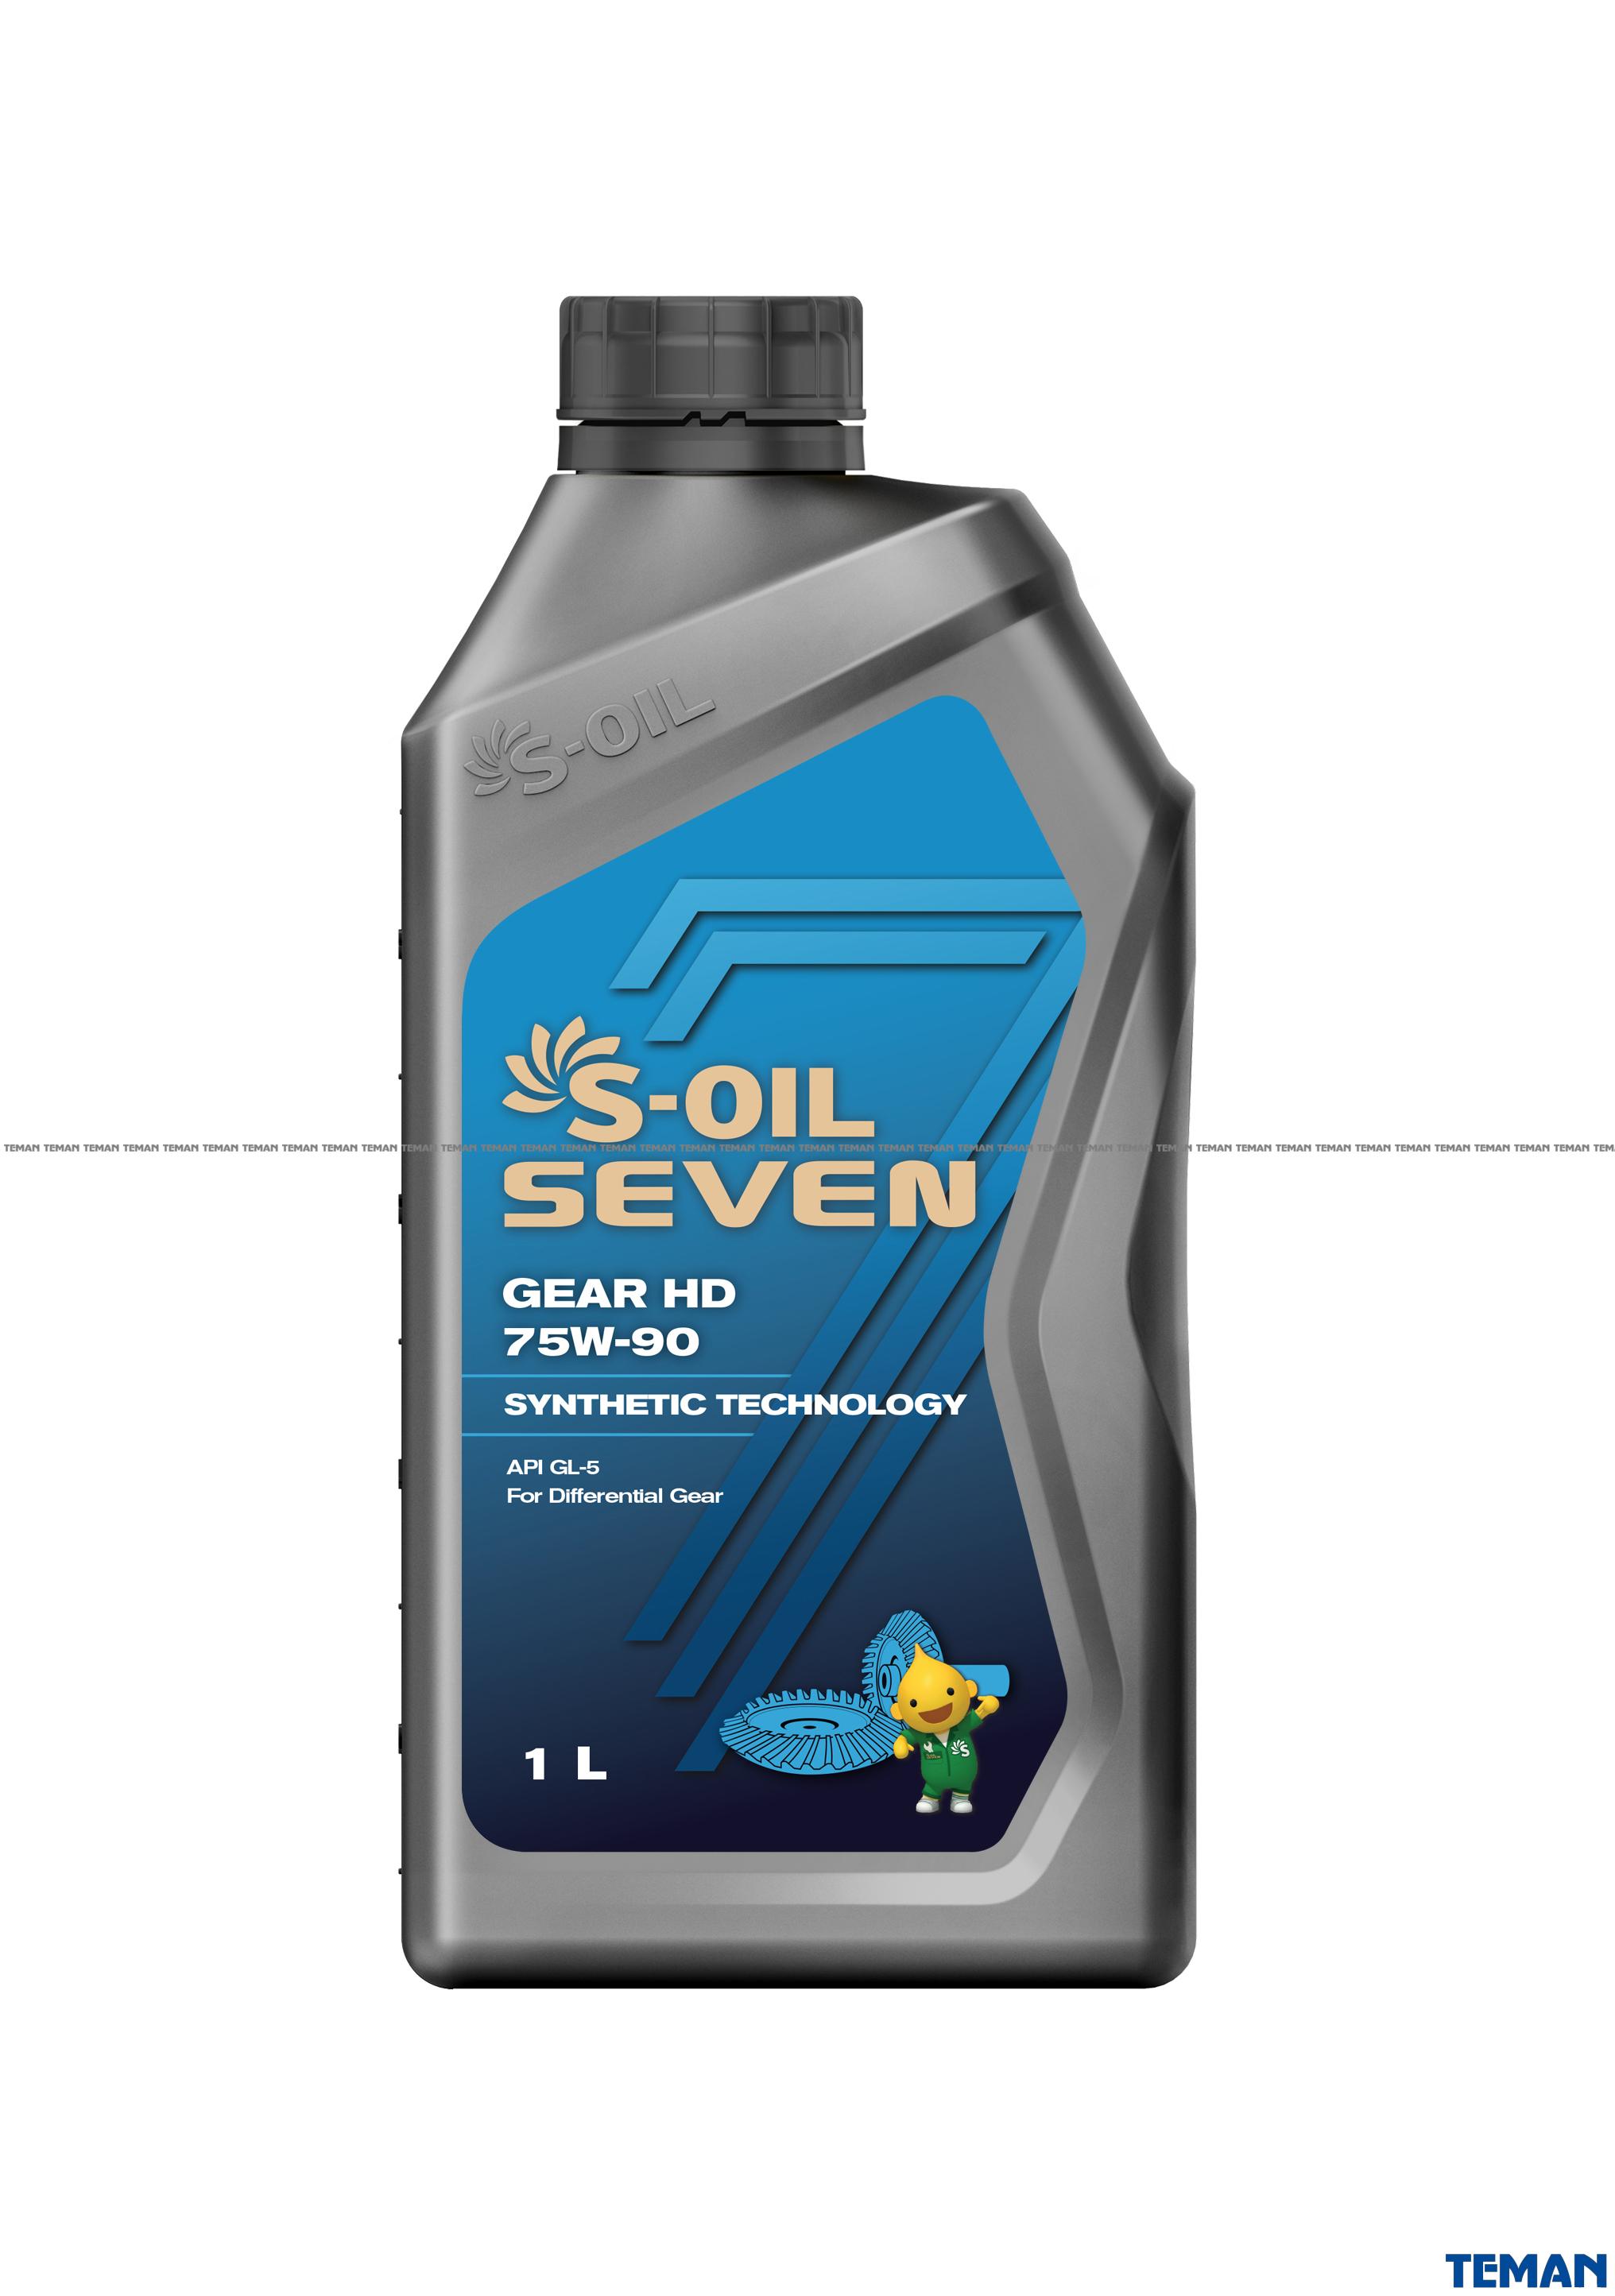  Купить Трансмиссионное синтетическое масло SEVEN GEAR HD 75W-90 1лS-OIL SGHD75901   